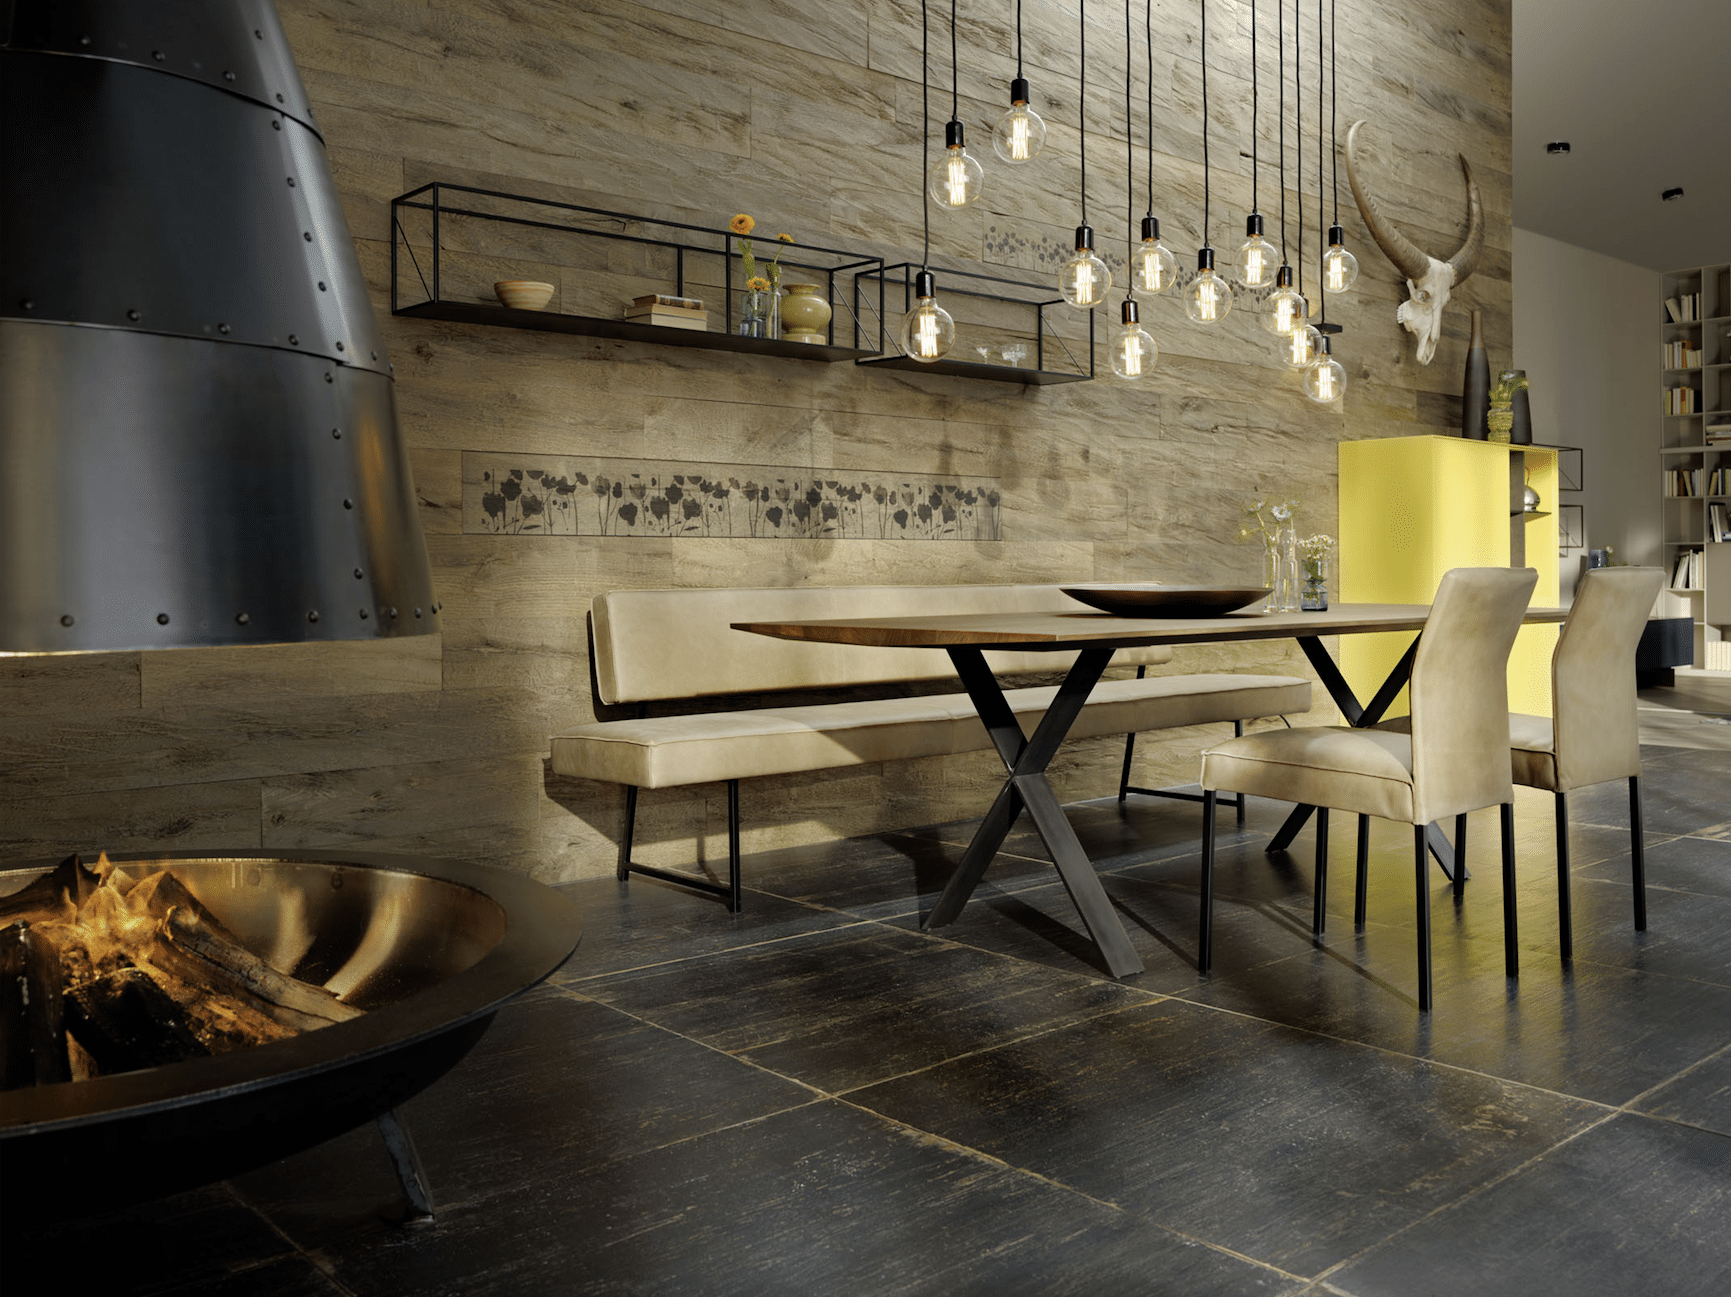 Pointinger | kochen & wohnen zeigt ein rustikal-modernes Esszimmer von haas mit einer offenen Feuerstelle und verspielter Hängeleuchte.